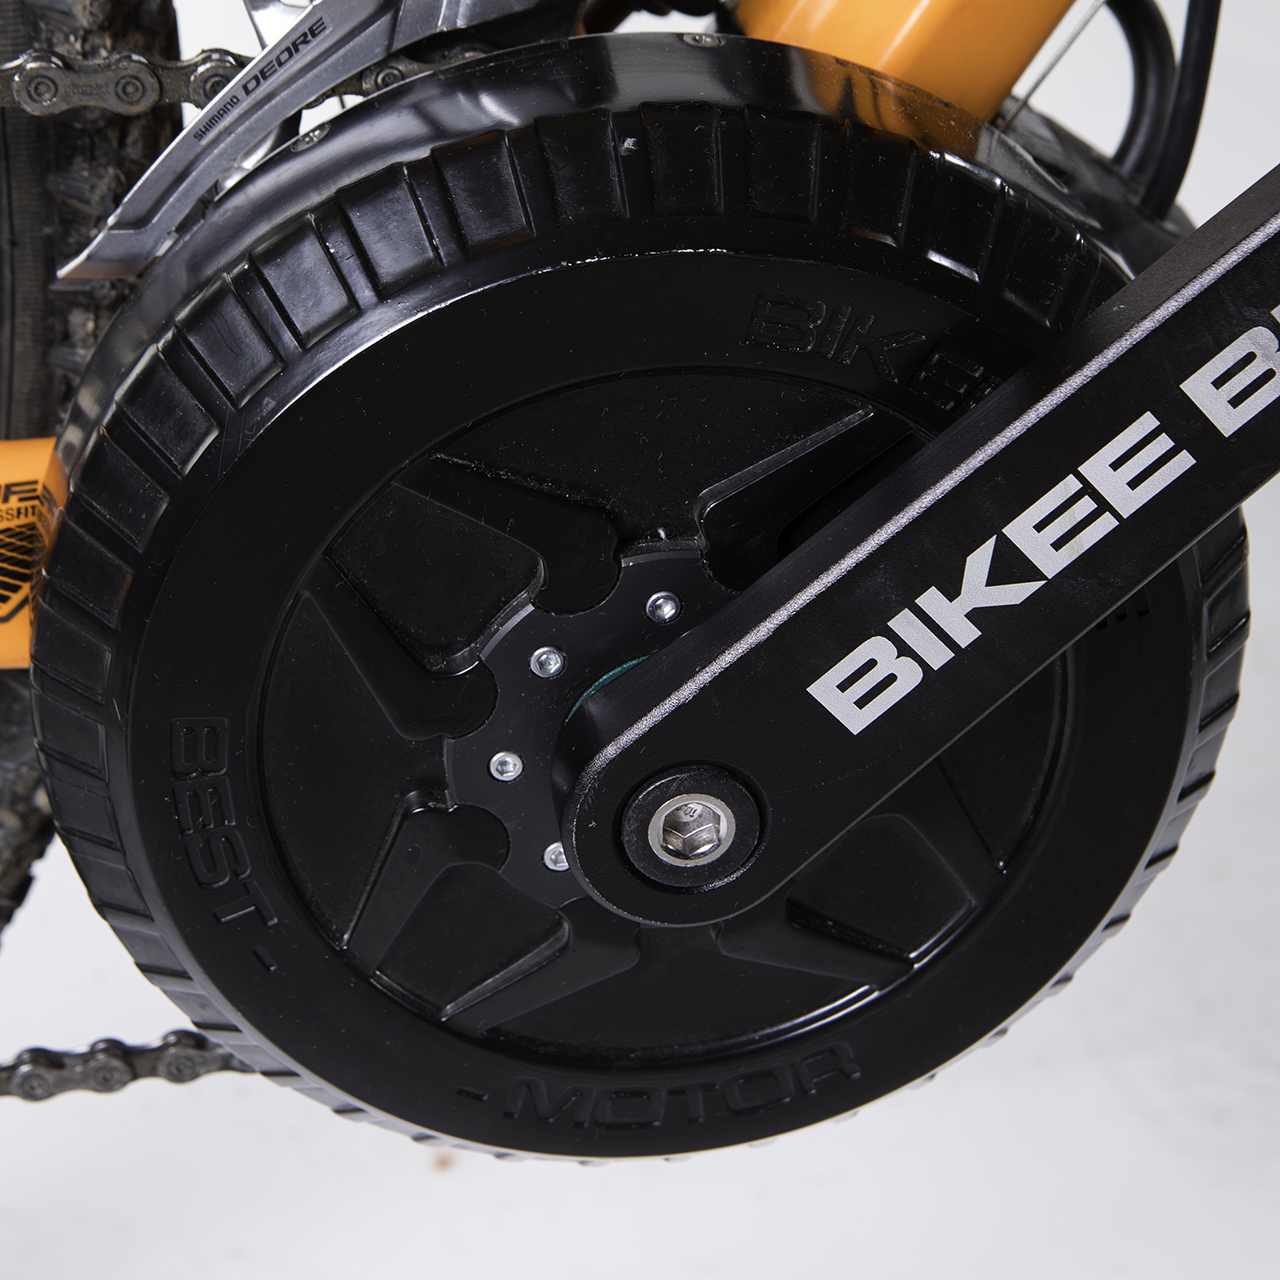 Kit di conversione per bicicletta elettrica con motore a spazzola da 250W  freno a disco per Mountain Bike sistema di trasmissione a catena con  pignone da 28T per supporto laterale per E-bike 